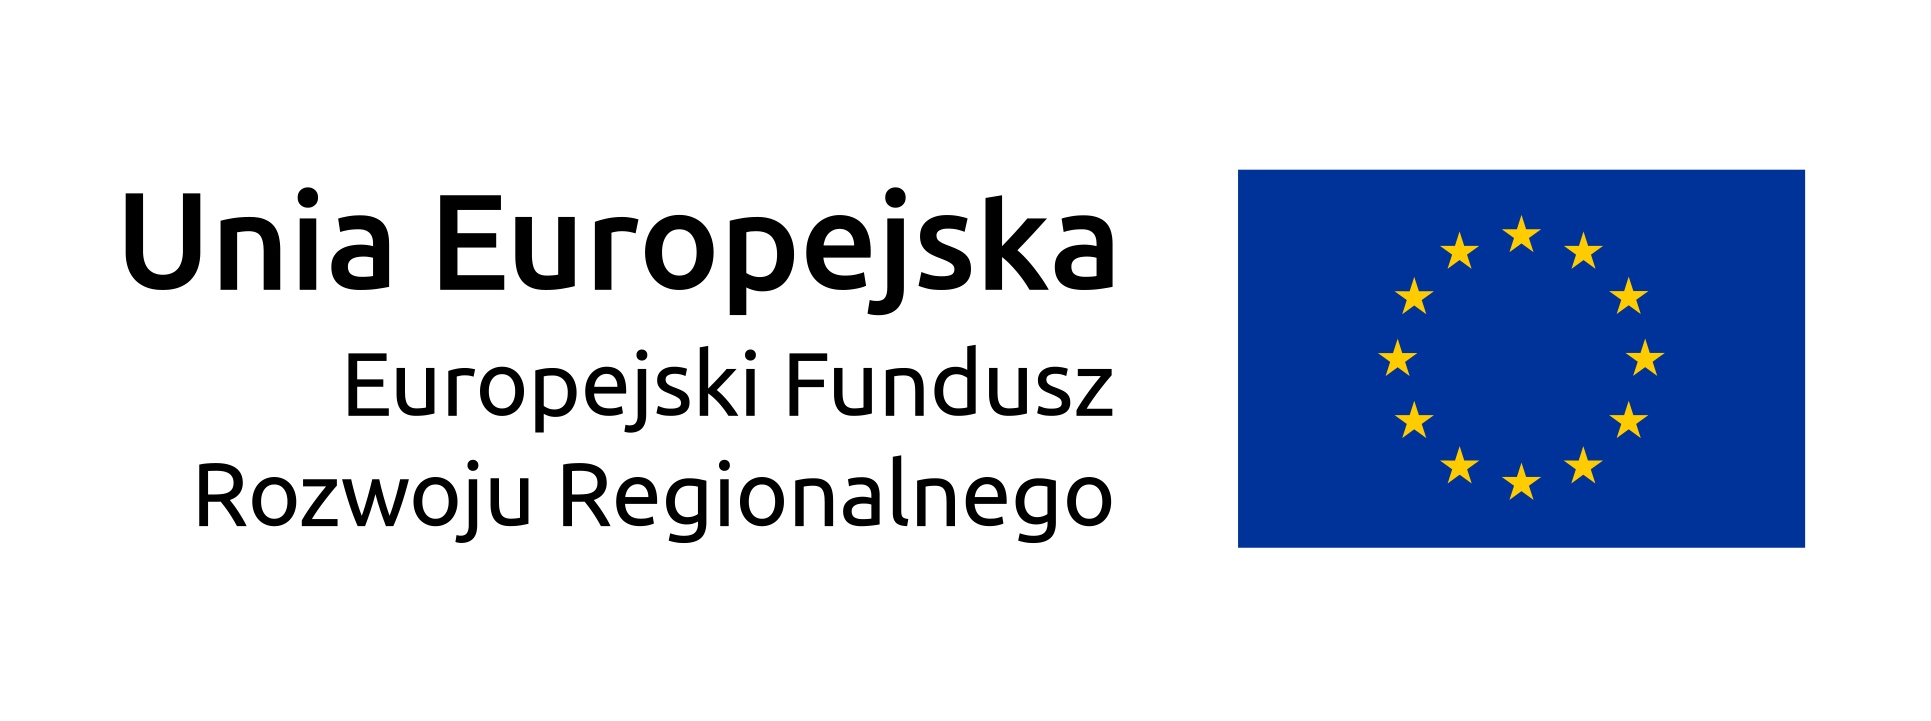 Znak Unia Europejska z Europejskim Funduszem Rozwoju Regionalnego